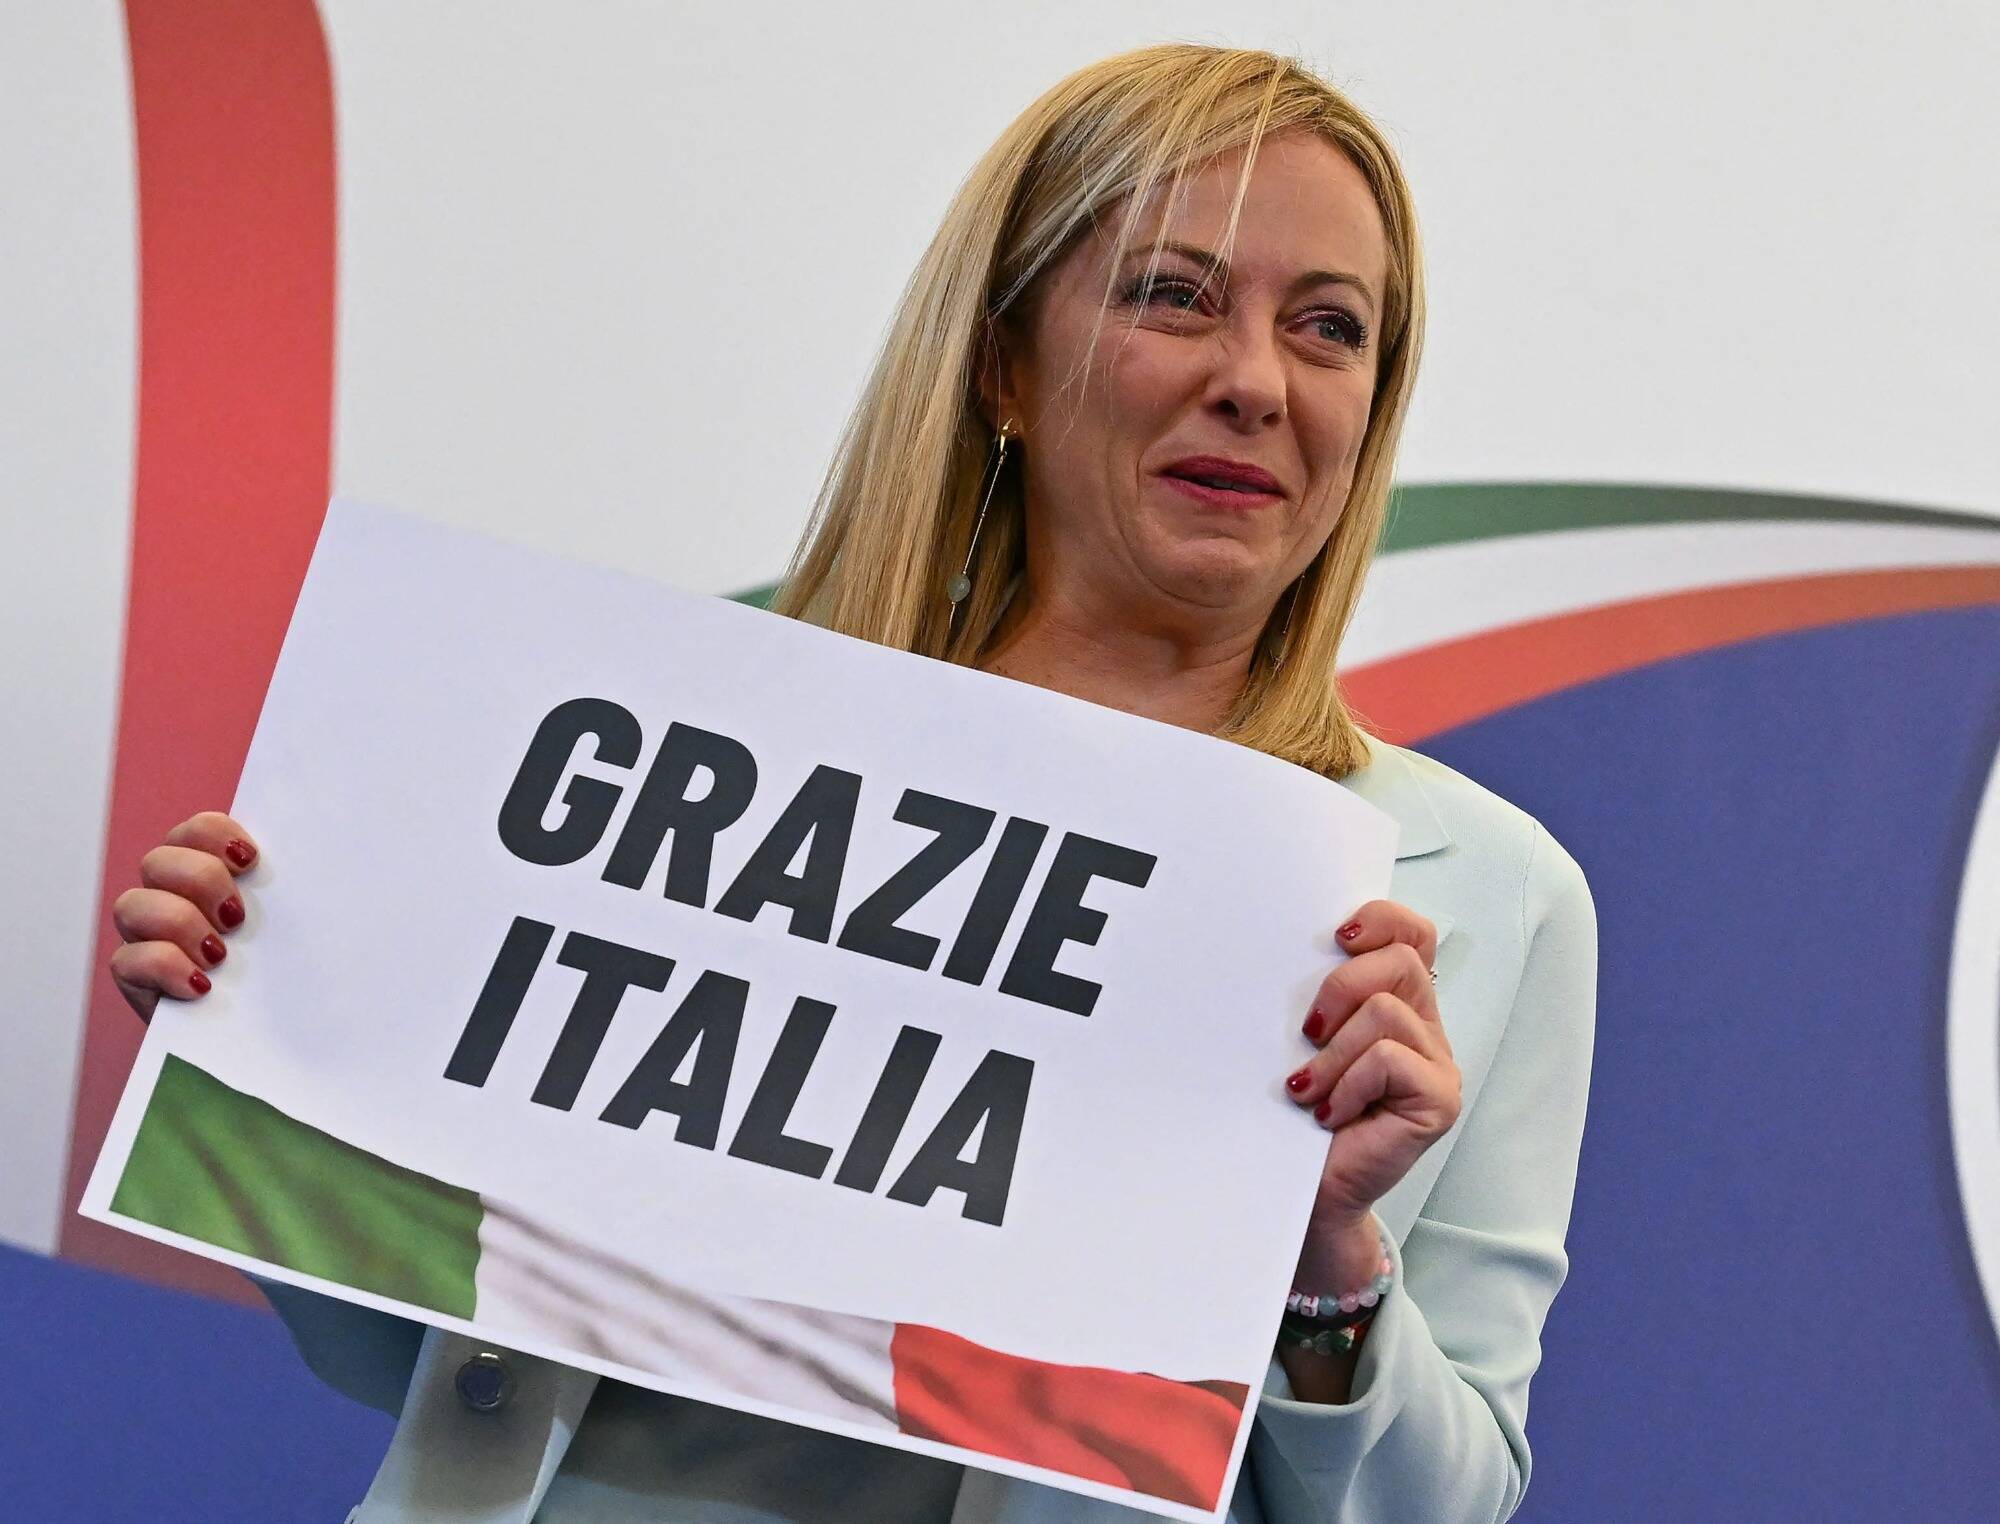 Giorgia Meloni, capo del governo italiano, ha condannato la reazione francese definendola “aggressiva, ingiustificata e incomprensibile”.